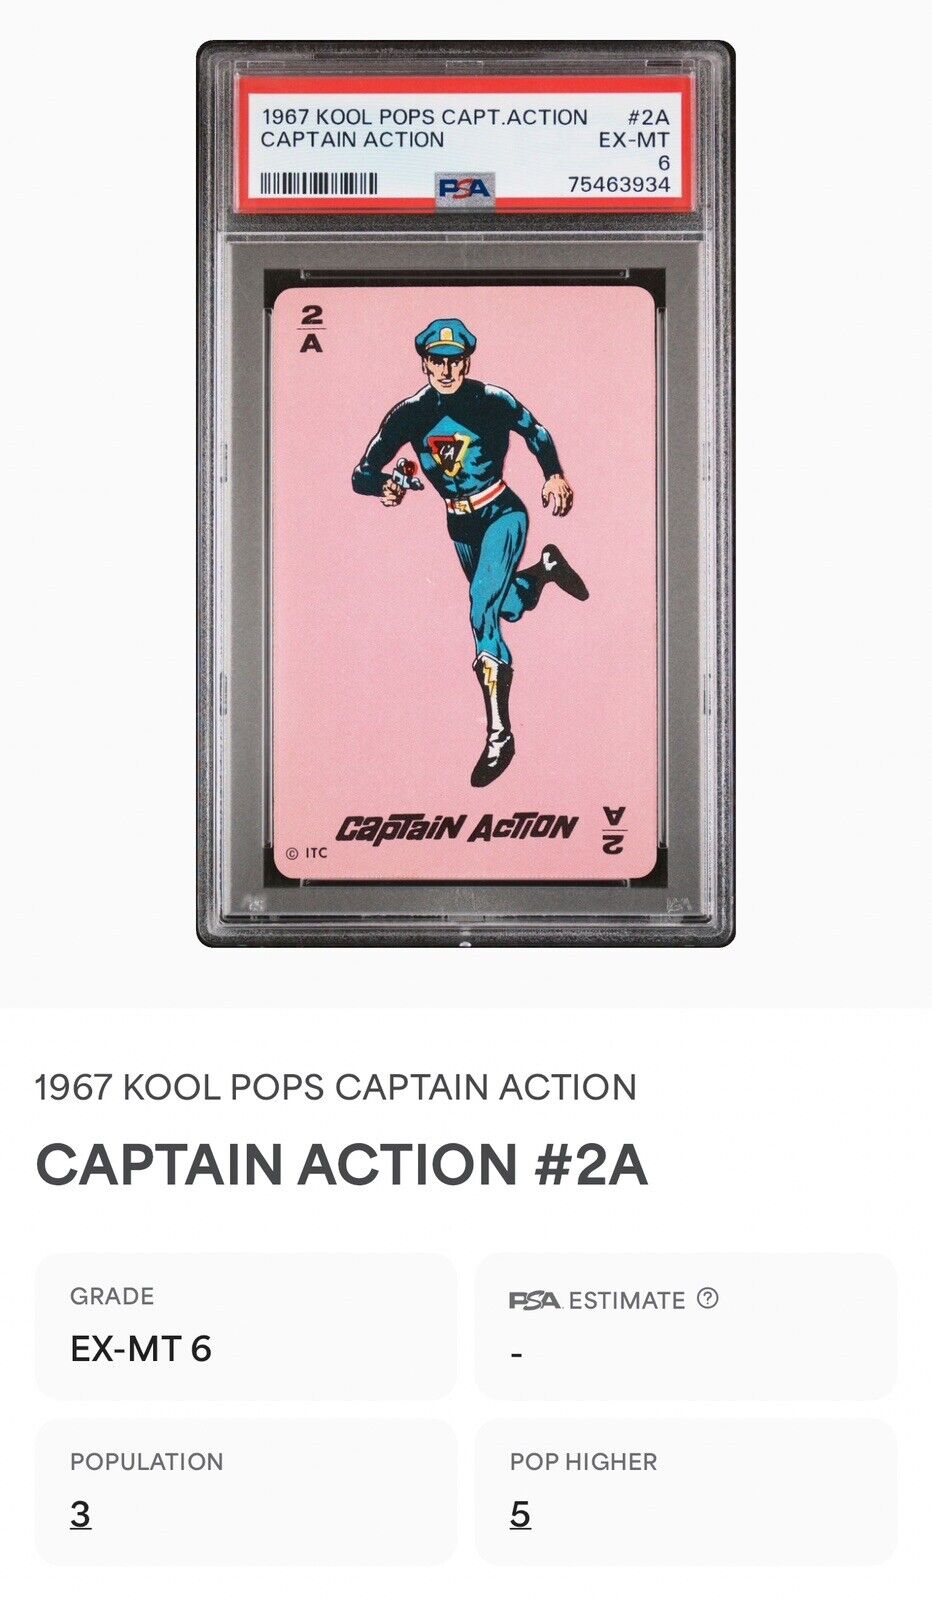 RARE VINTAGE 1967 KOOL POPS CAPTION ACTION PSA 6 EX-MINT - MARVEL DC COMICS